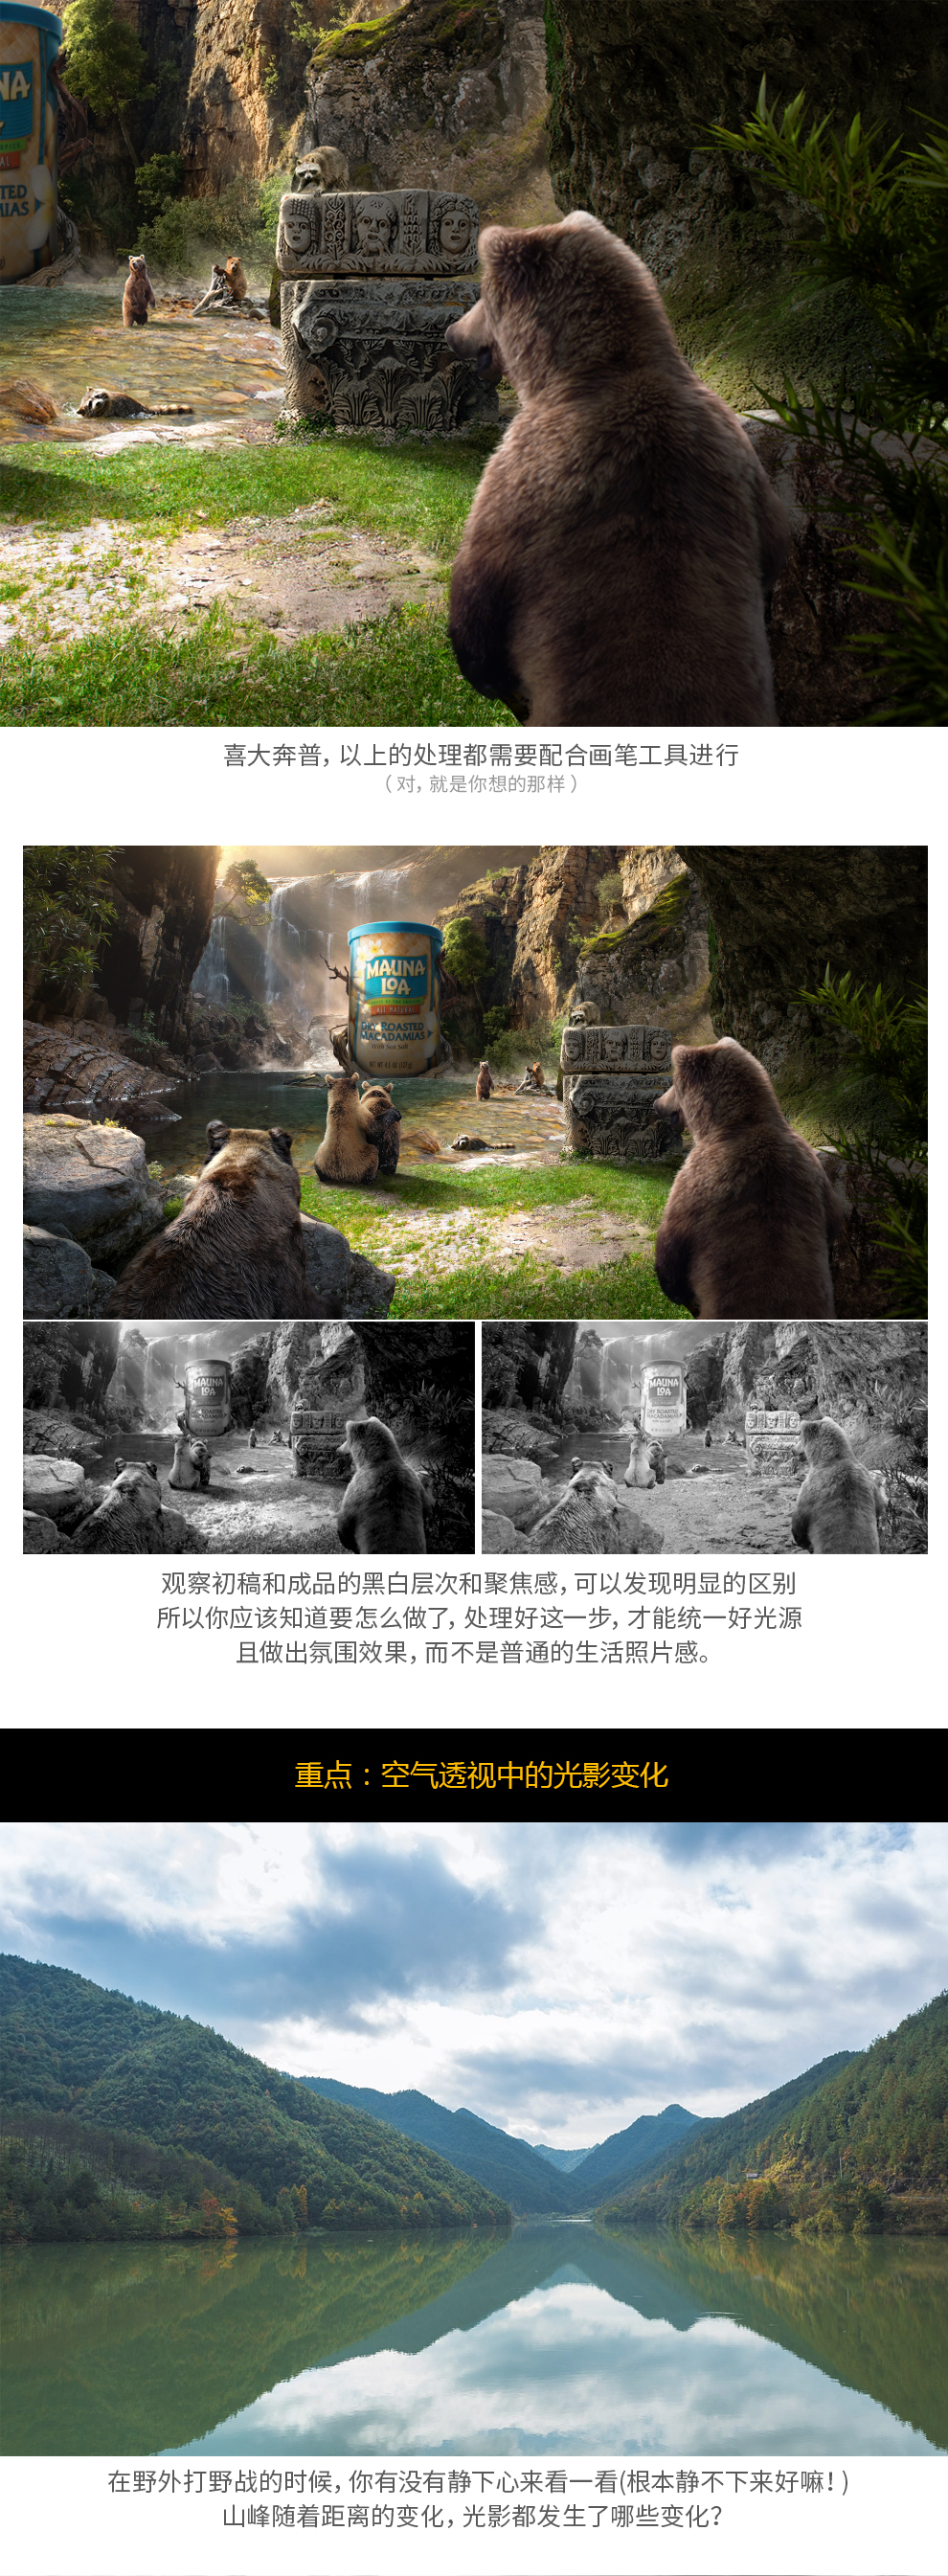 Photoshop详细解析合成海报中的光影表现技巧,PS教程,素材中国网